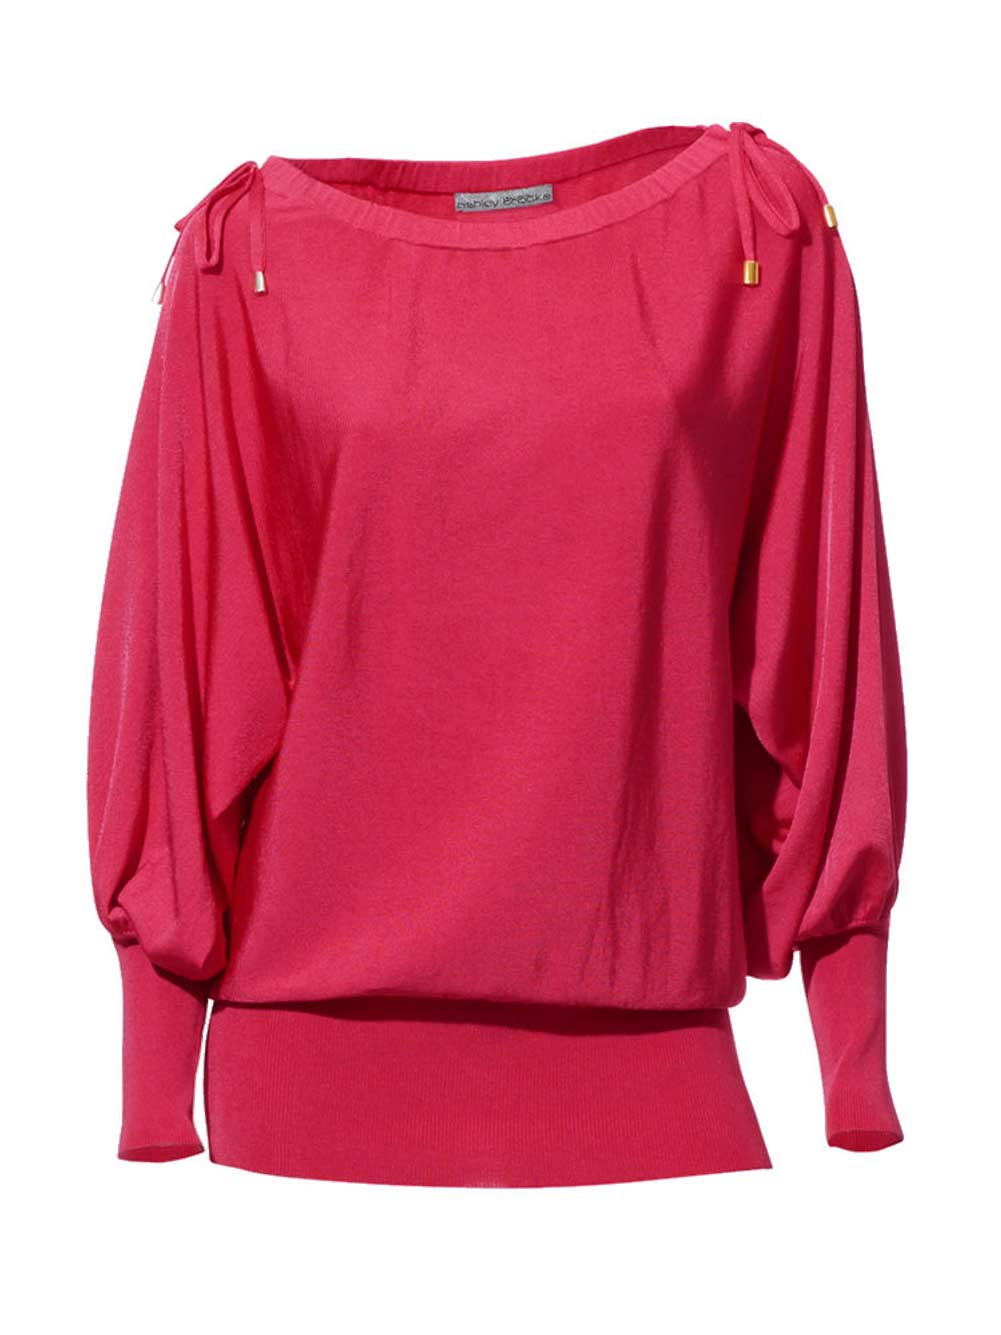 Ashley Brooke Damen Designer-Pullover, pink